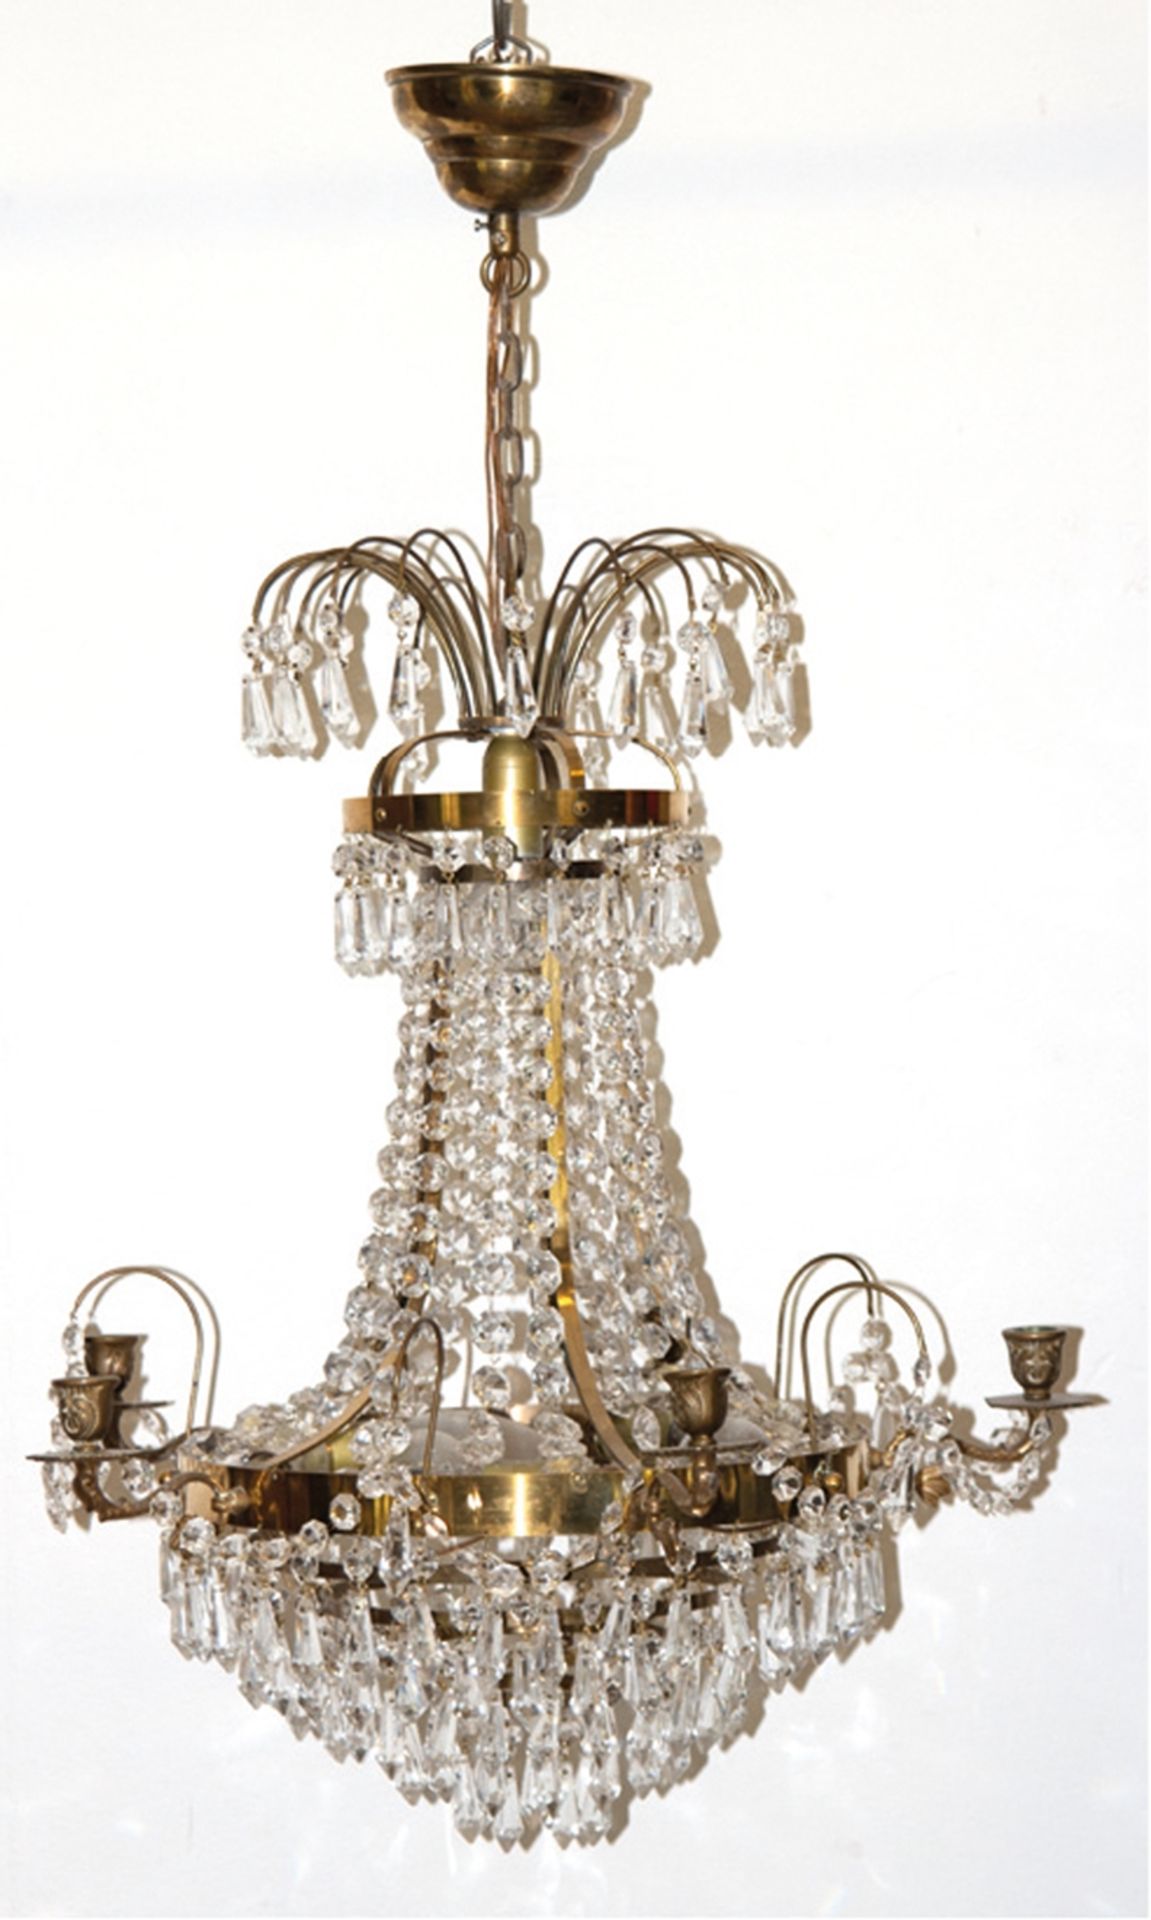 Deckenlüster, 5-kerzig und 6 Glühlampen, reicher Prismenbehang, H. 85 cm, Dm. 46 cm